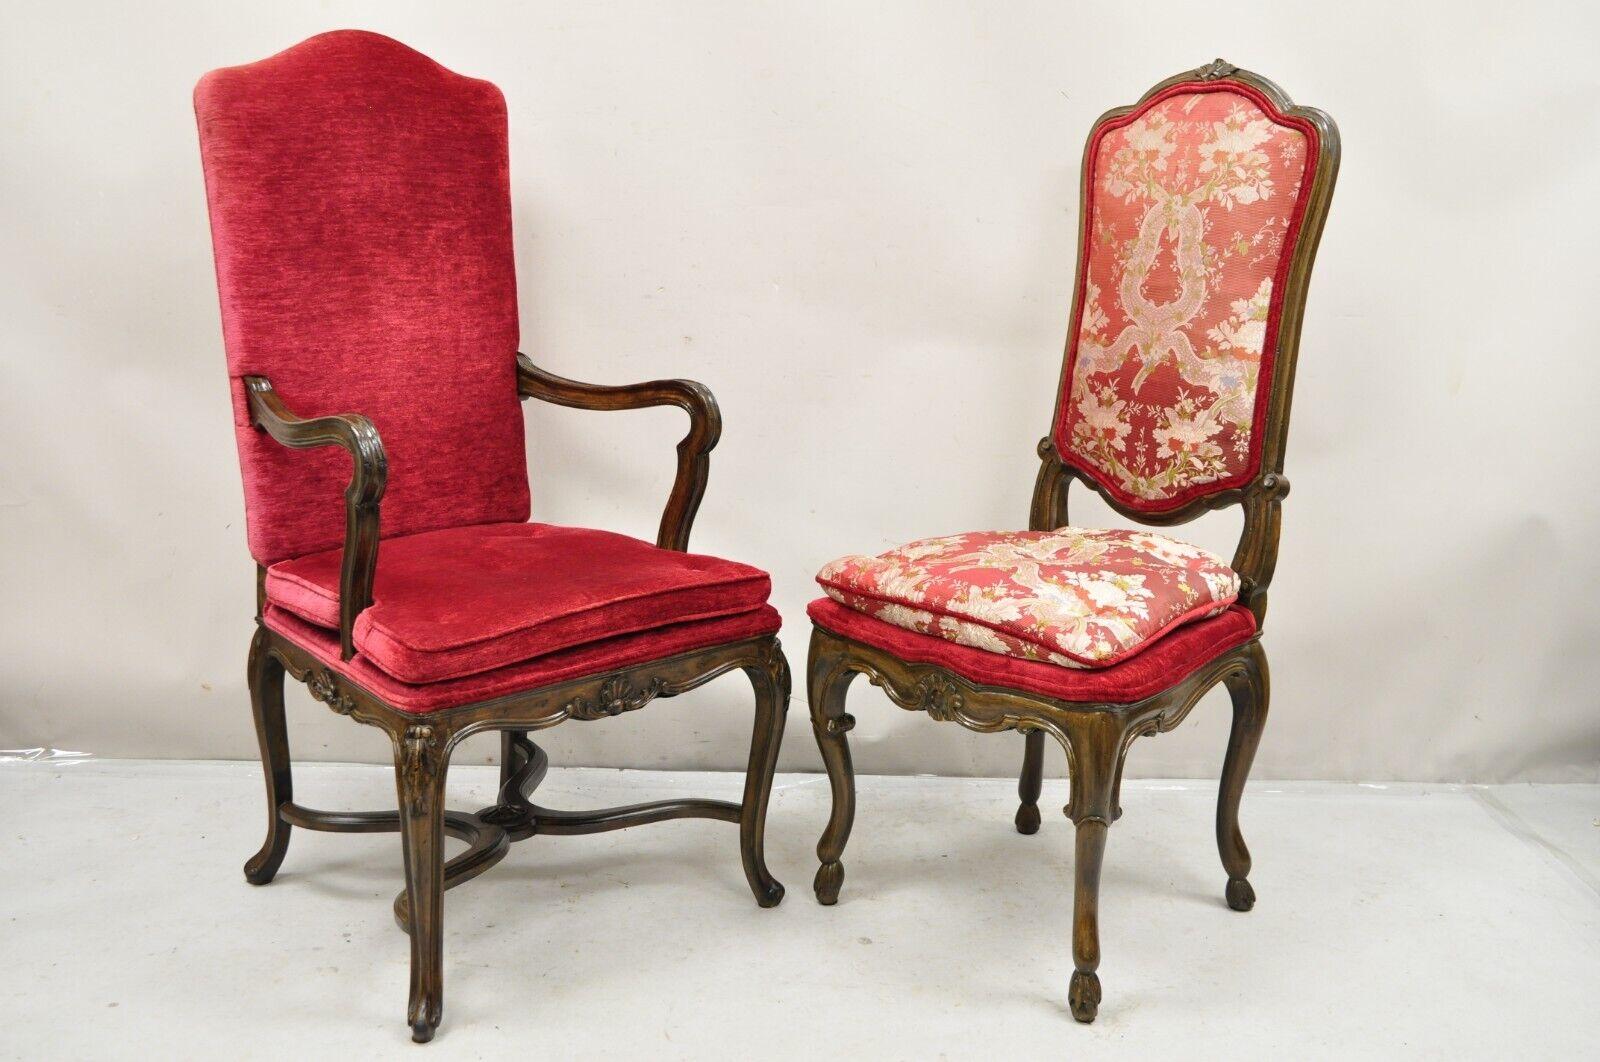 Chaises de salle à manger en noyer rouge sculpté - Lot de 6. L'article présente une légère variation de la couleur de finition et des détails de sculpture entre les fauteuils et les chaises latérales, cadres en bois massif joliment sculptés,